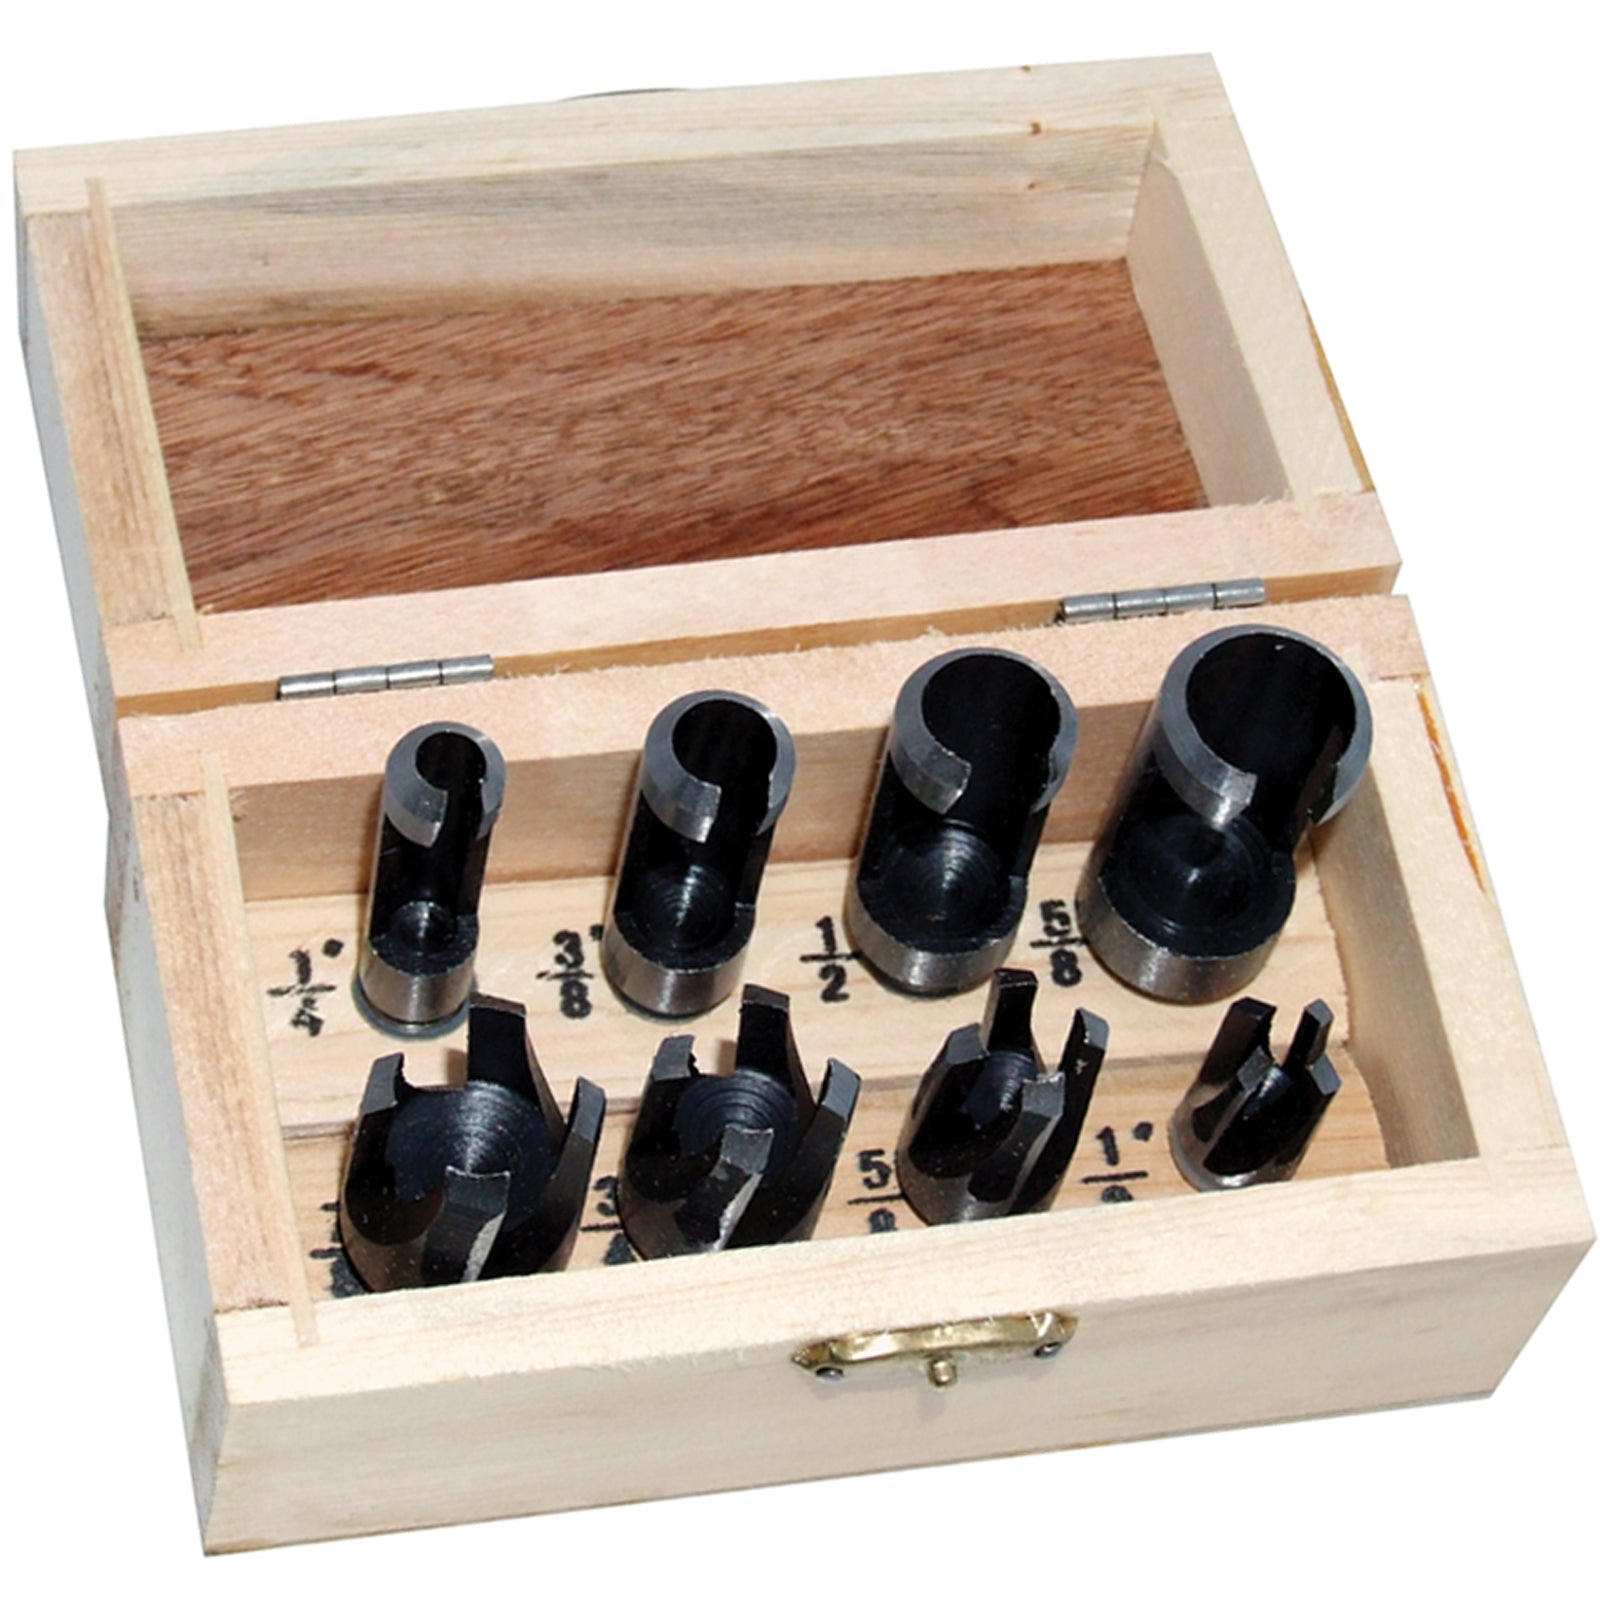 Amtech 8 Piece Plug Cutter Set in Wooden Storage Box